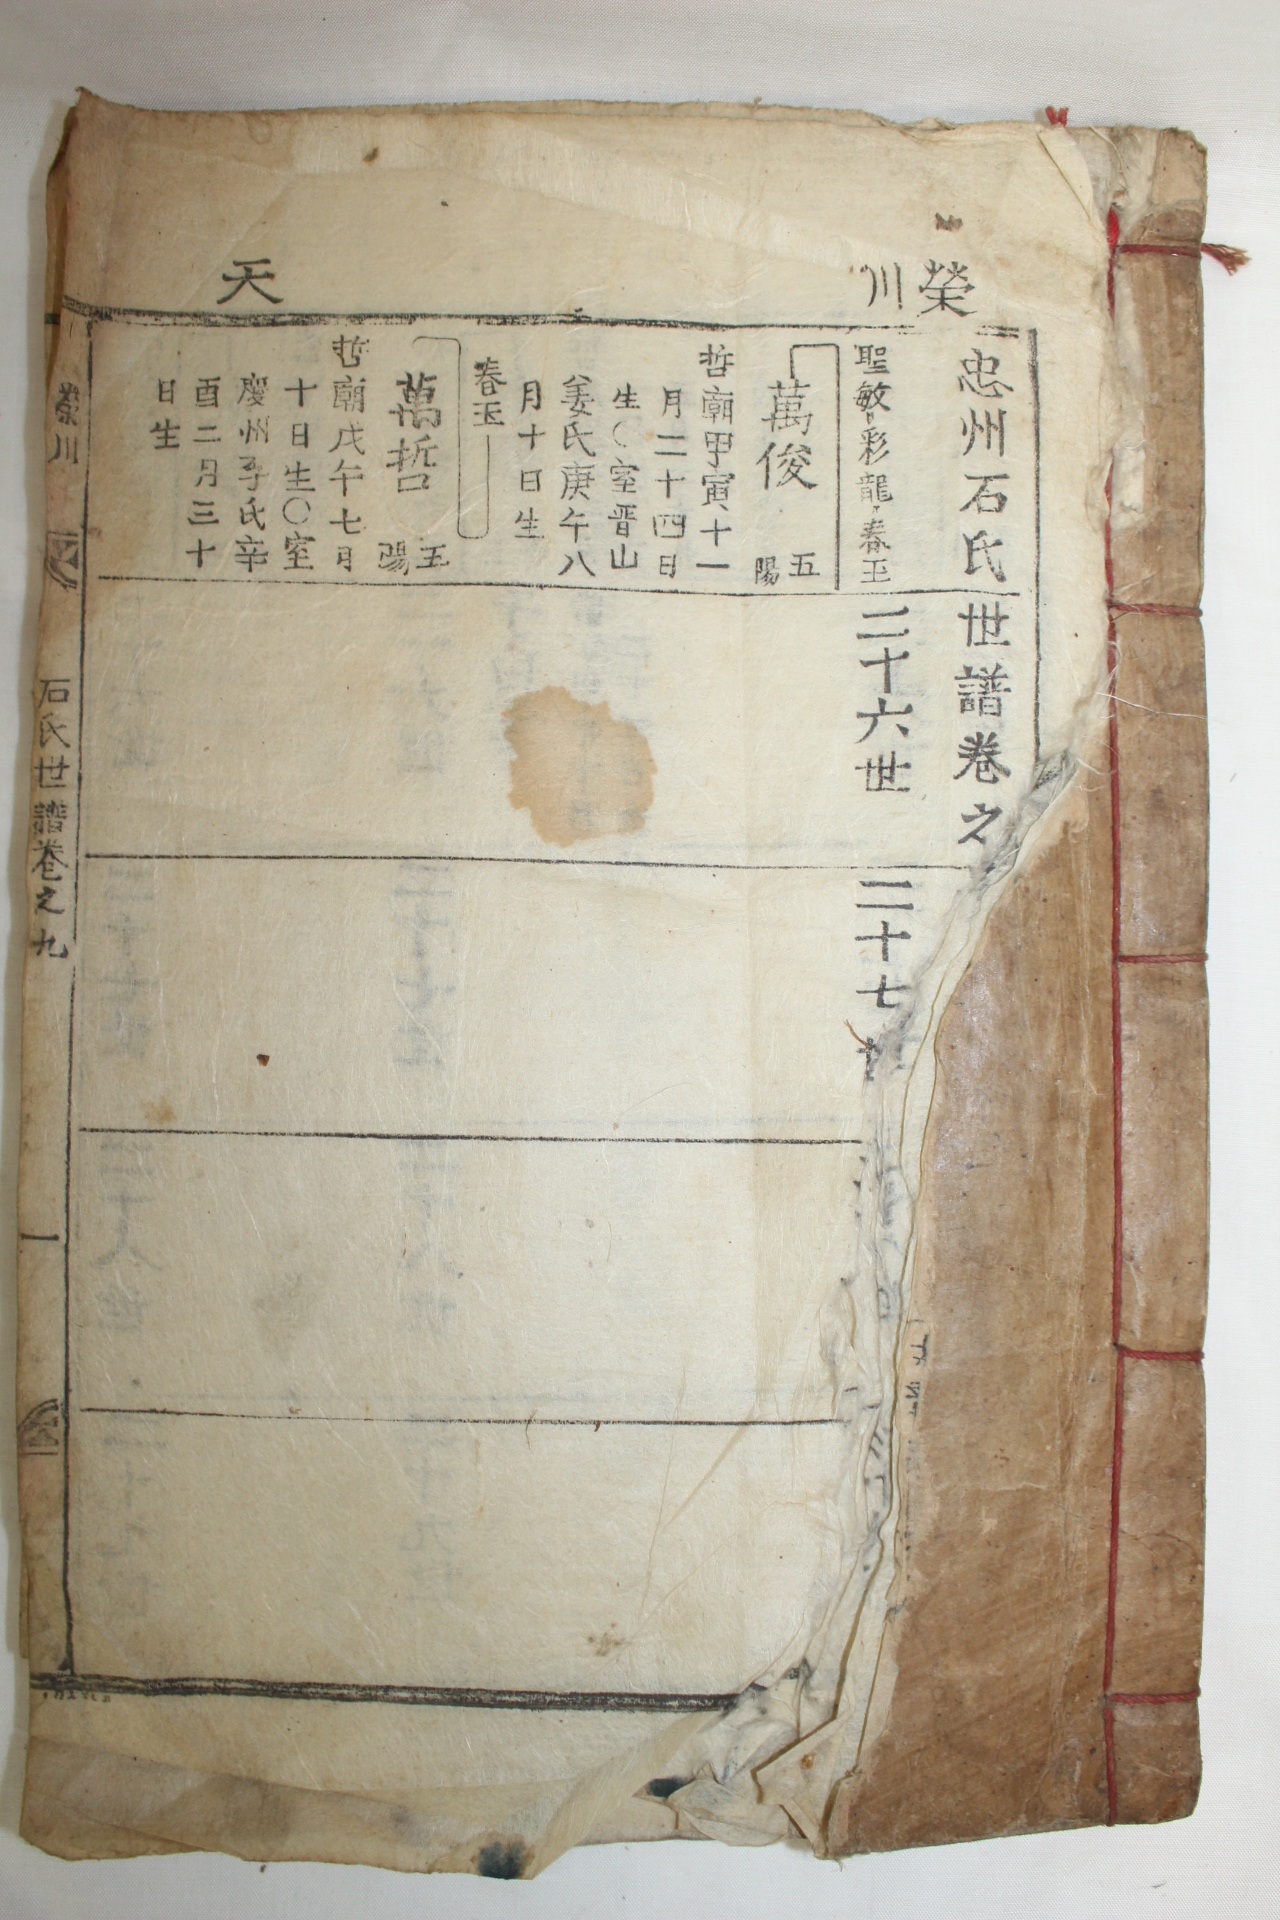 1891년 목활자본 충주석씨세보(忠州石氏世譜) 8책